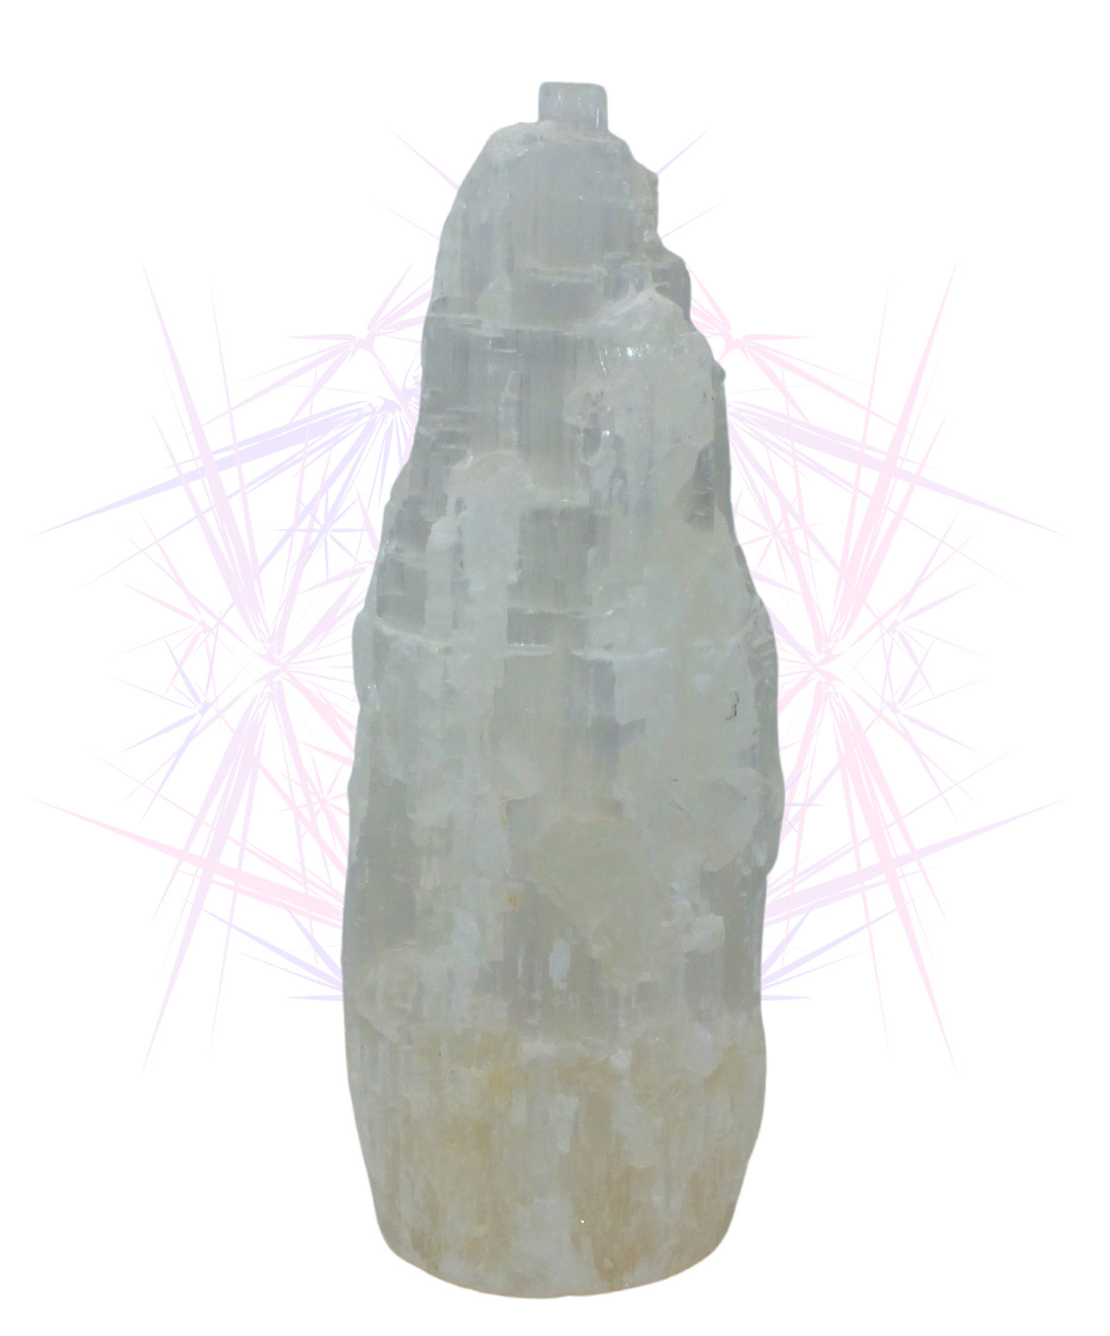 מנורת גביש סלנייט טבעי דגם 'מפל' - גדול